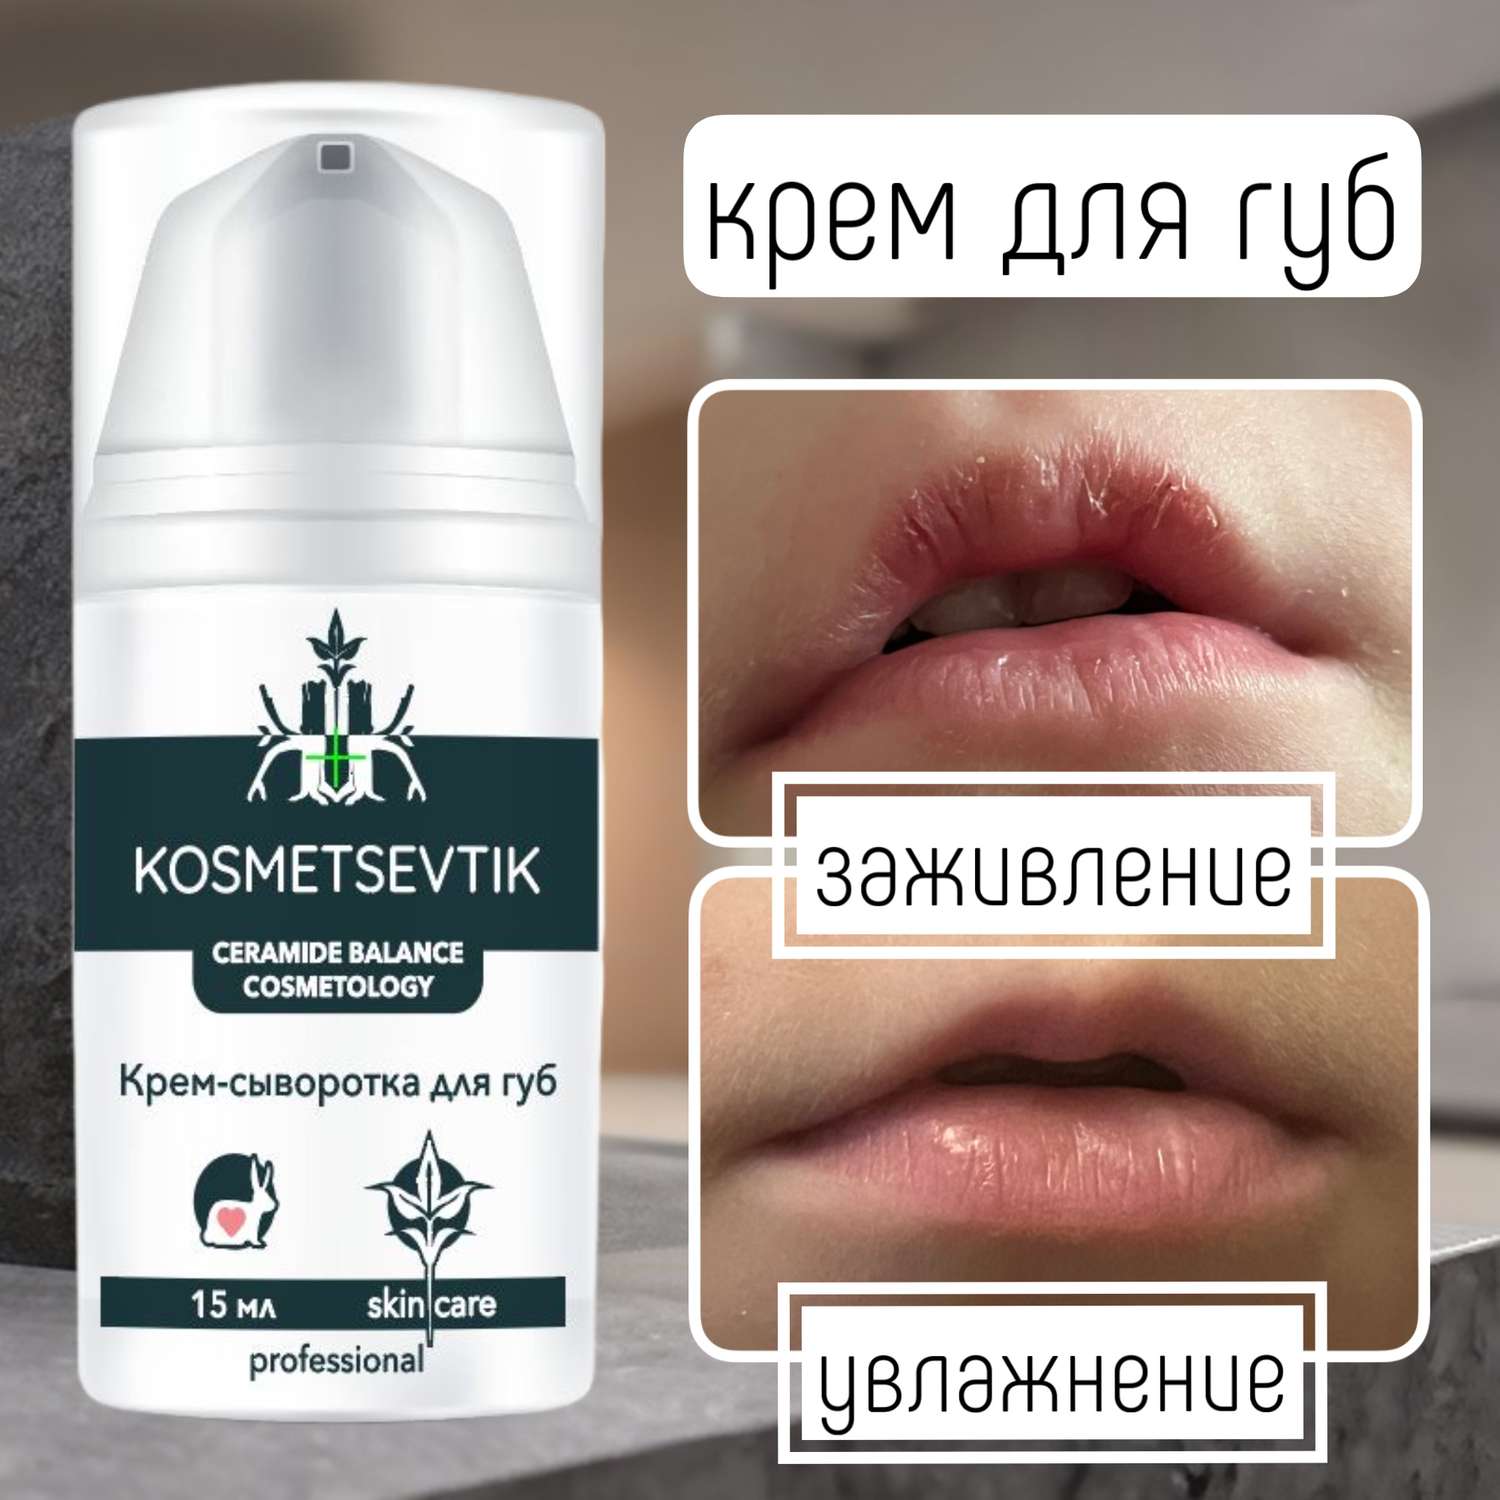 Крем для губ KOSMETSEVTIK для детей и взрослых - фото 1